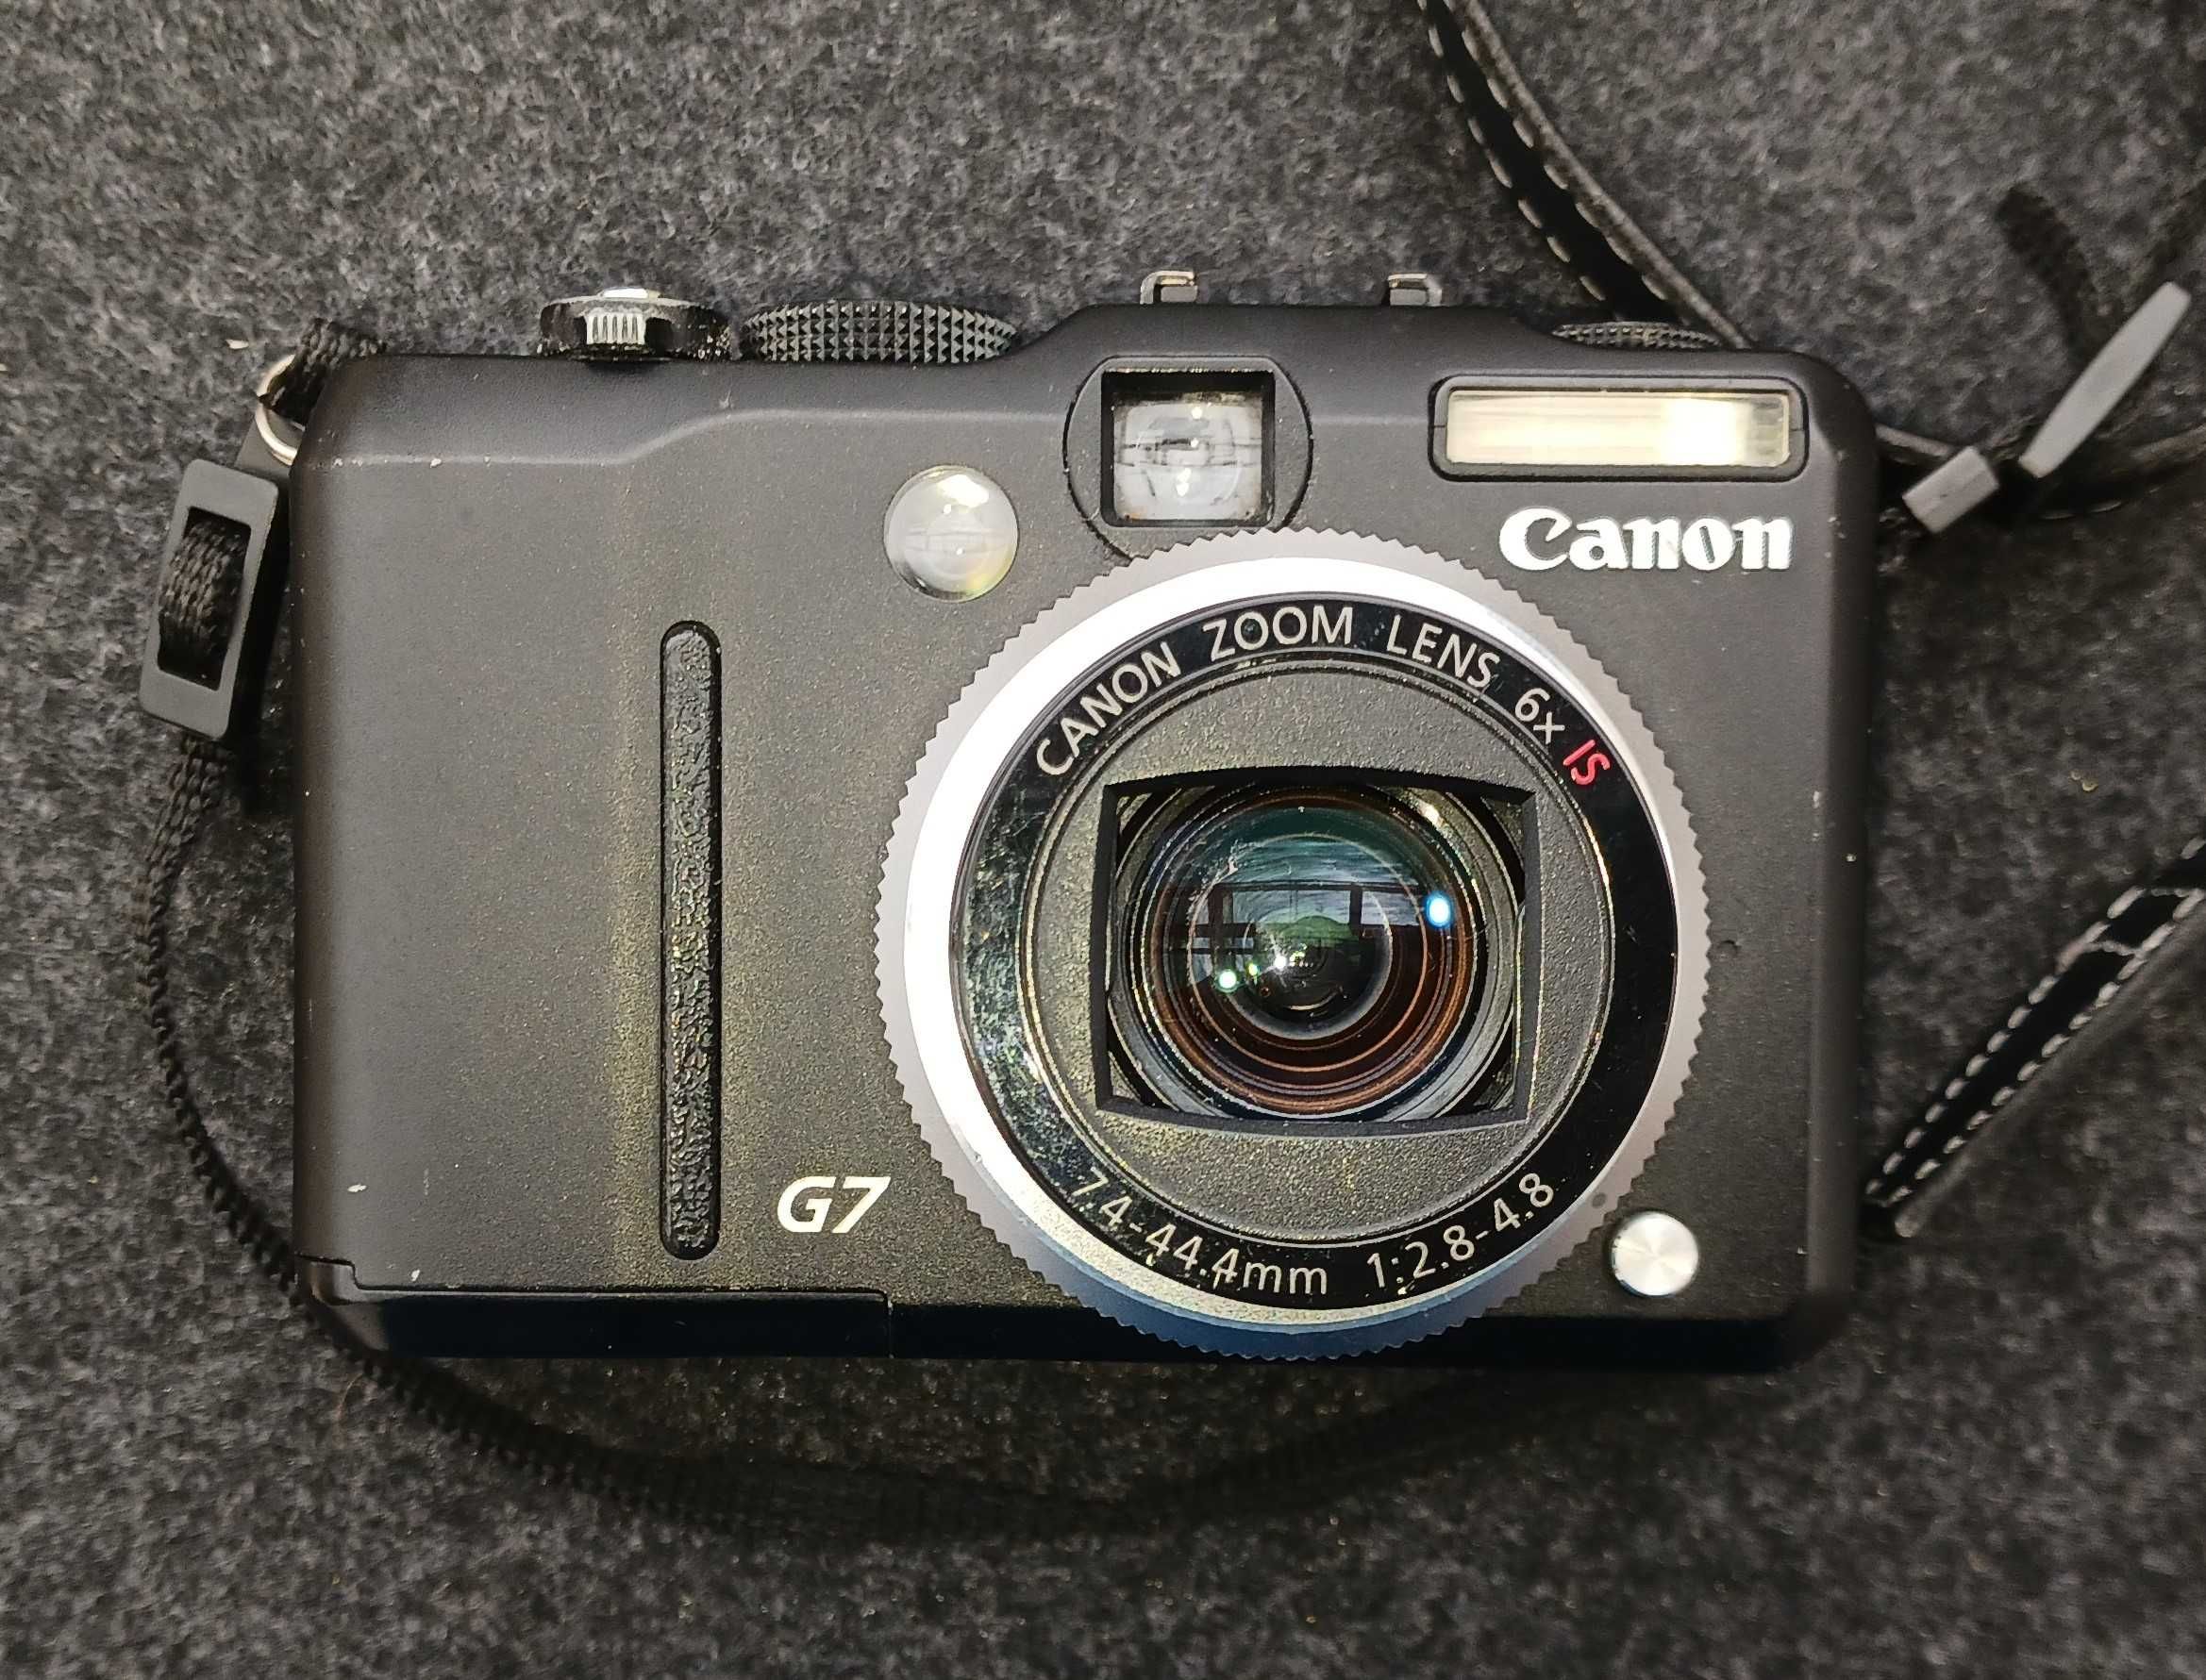 Canon G7 Powershotcu toc